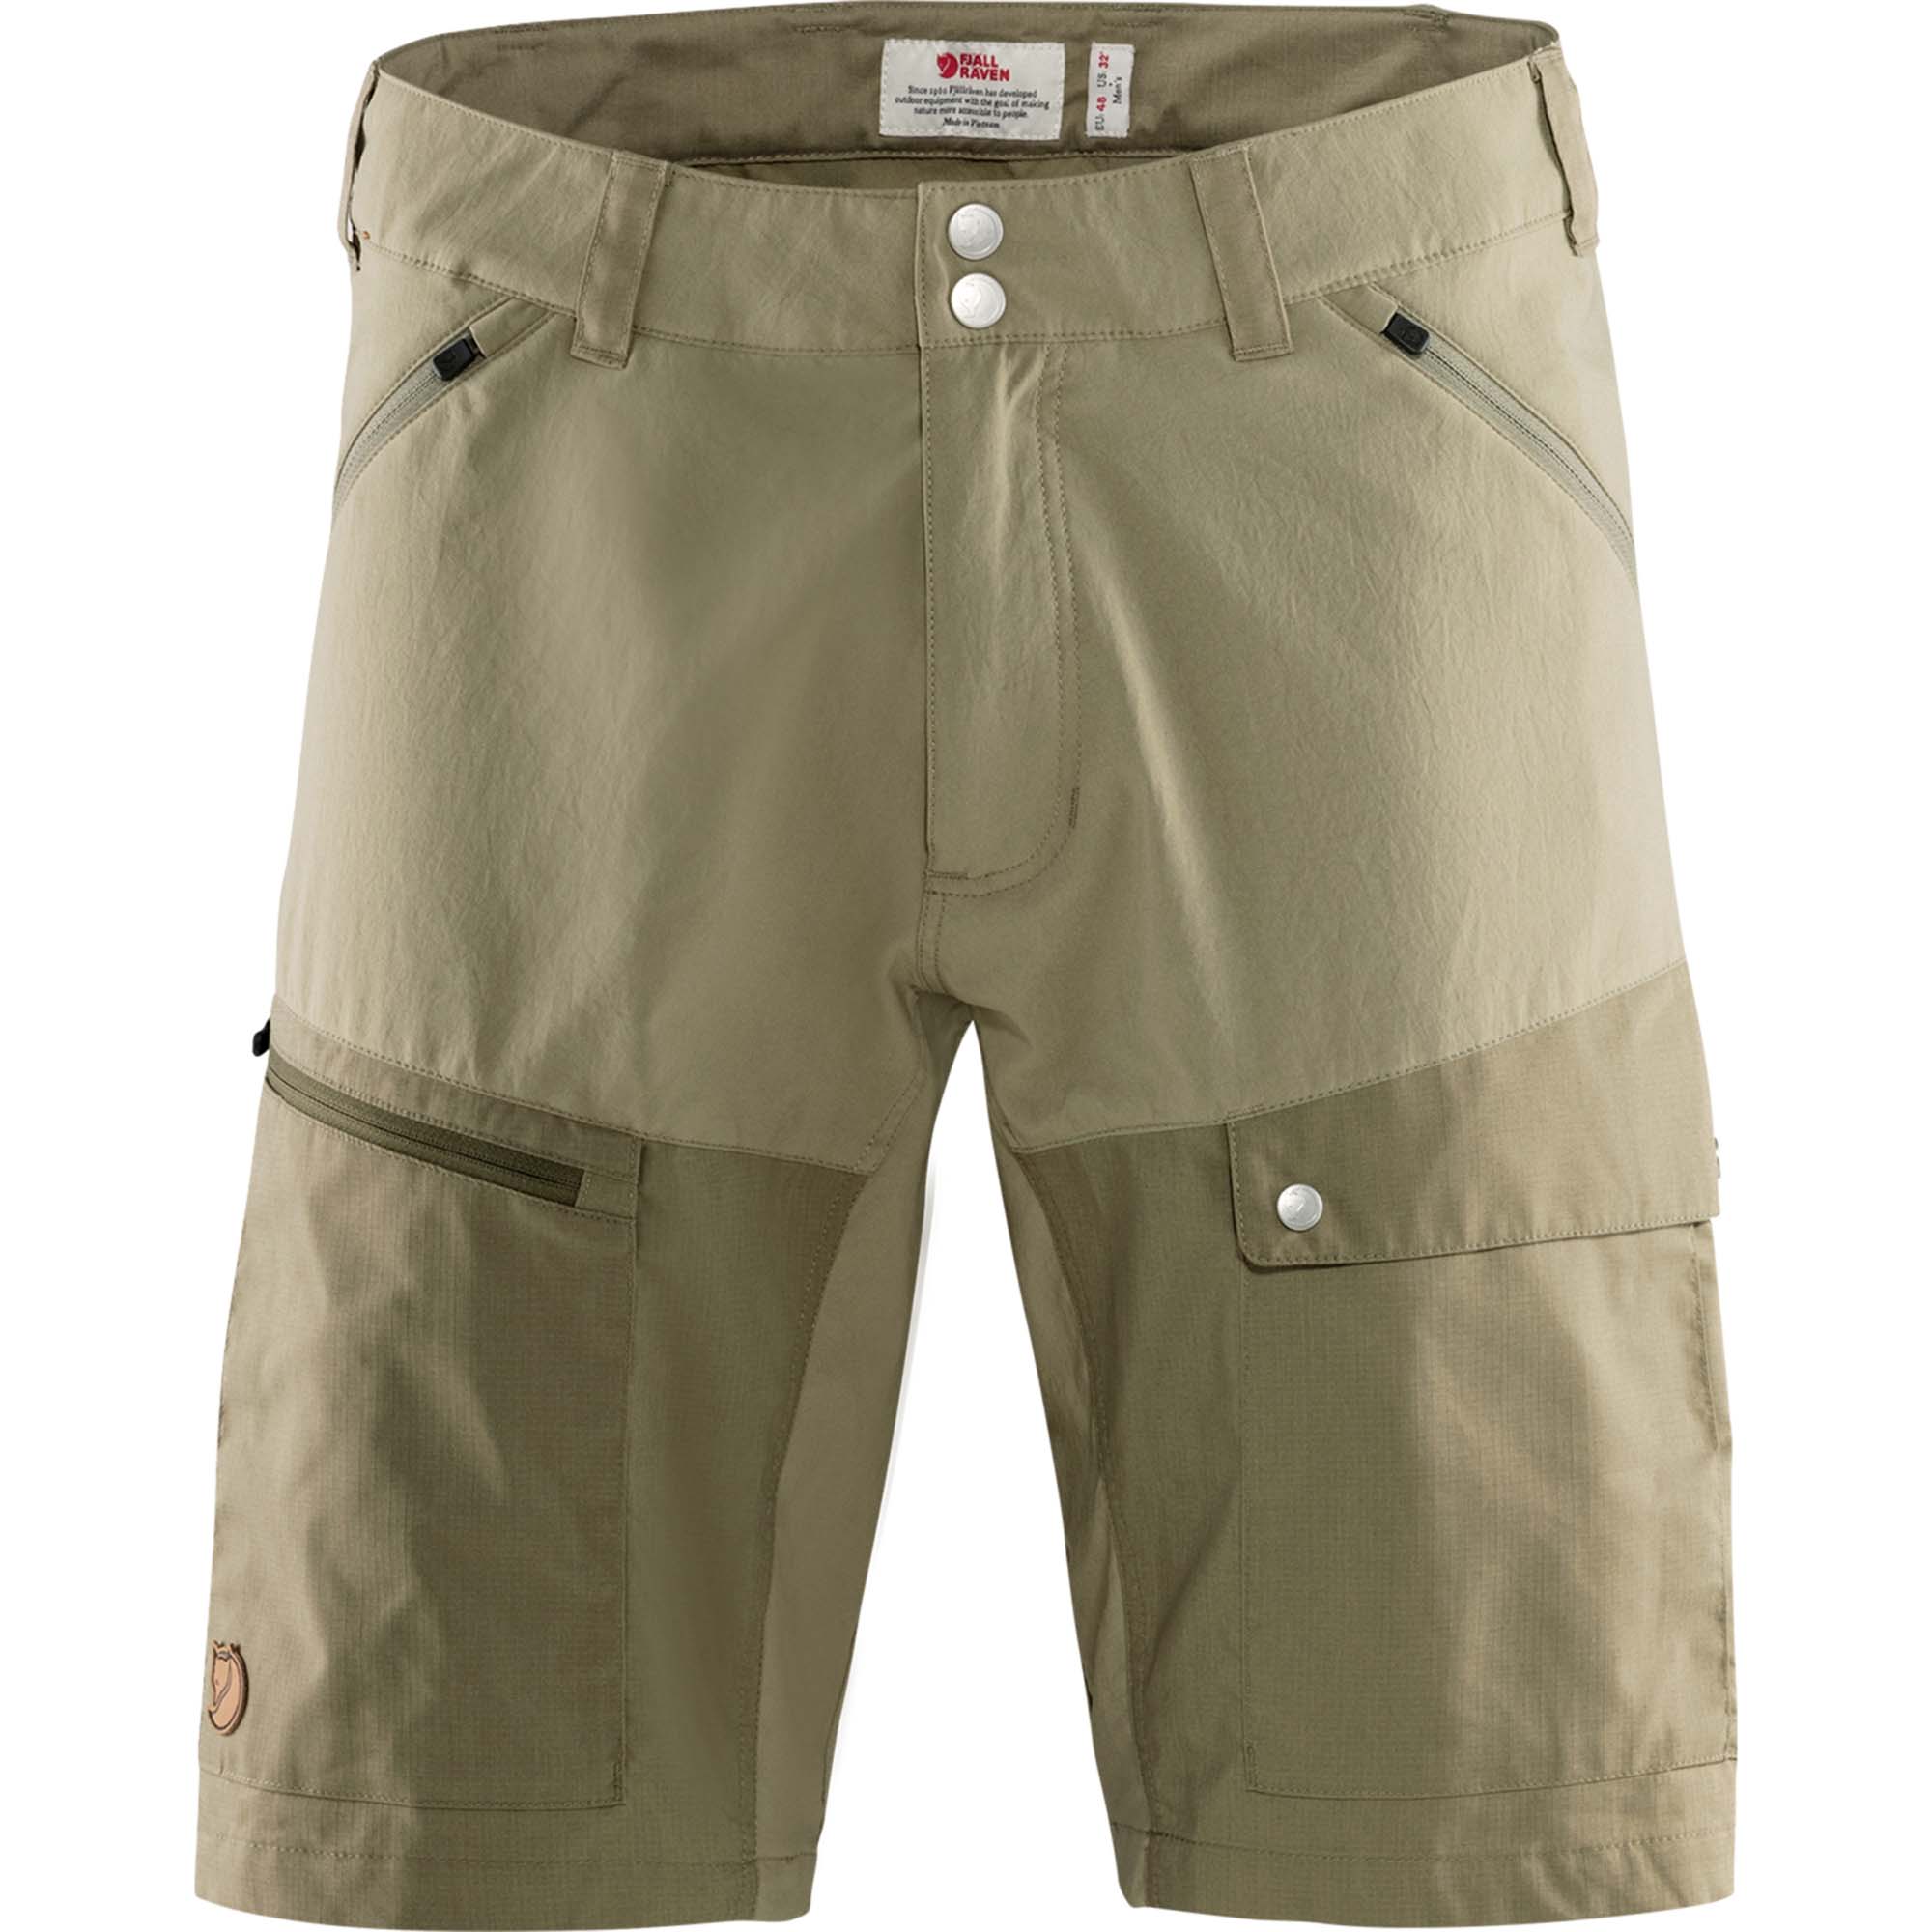 Abisko midsummer shorts